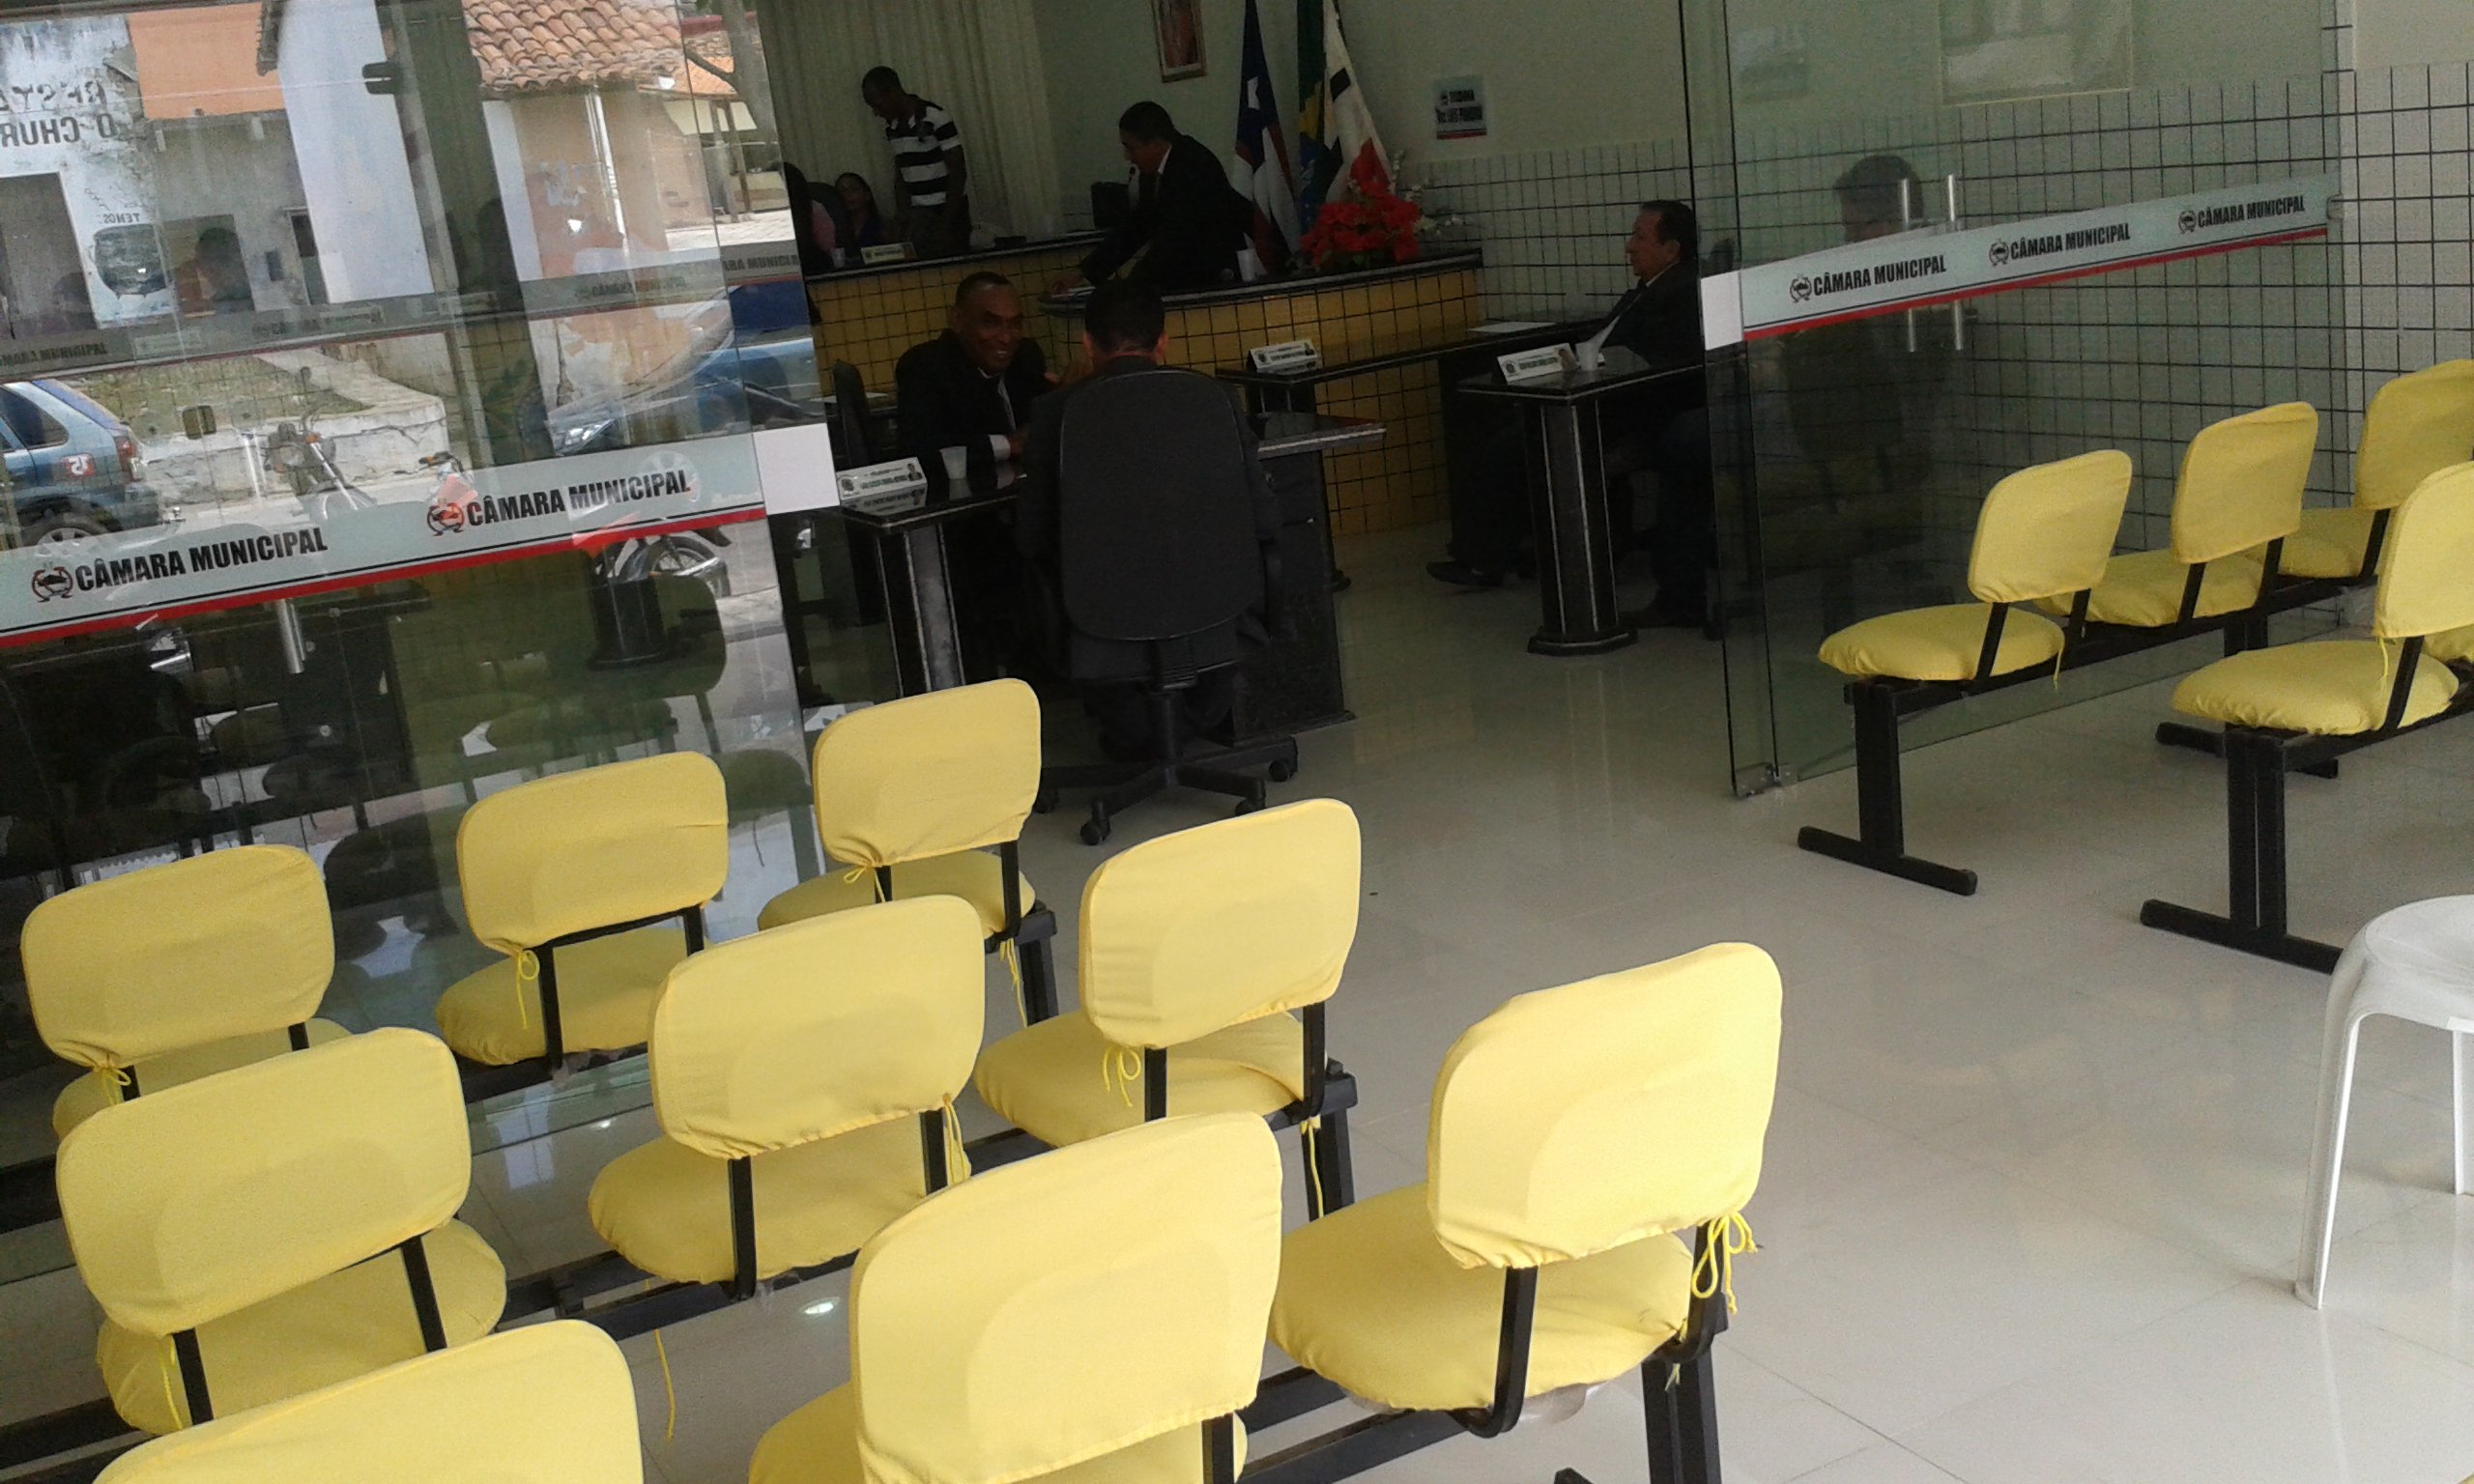 Sessão na câmara de vereadores de Pindaré: baixo nível de debates, vereador abandona sessão e prefeito desafia vereador